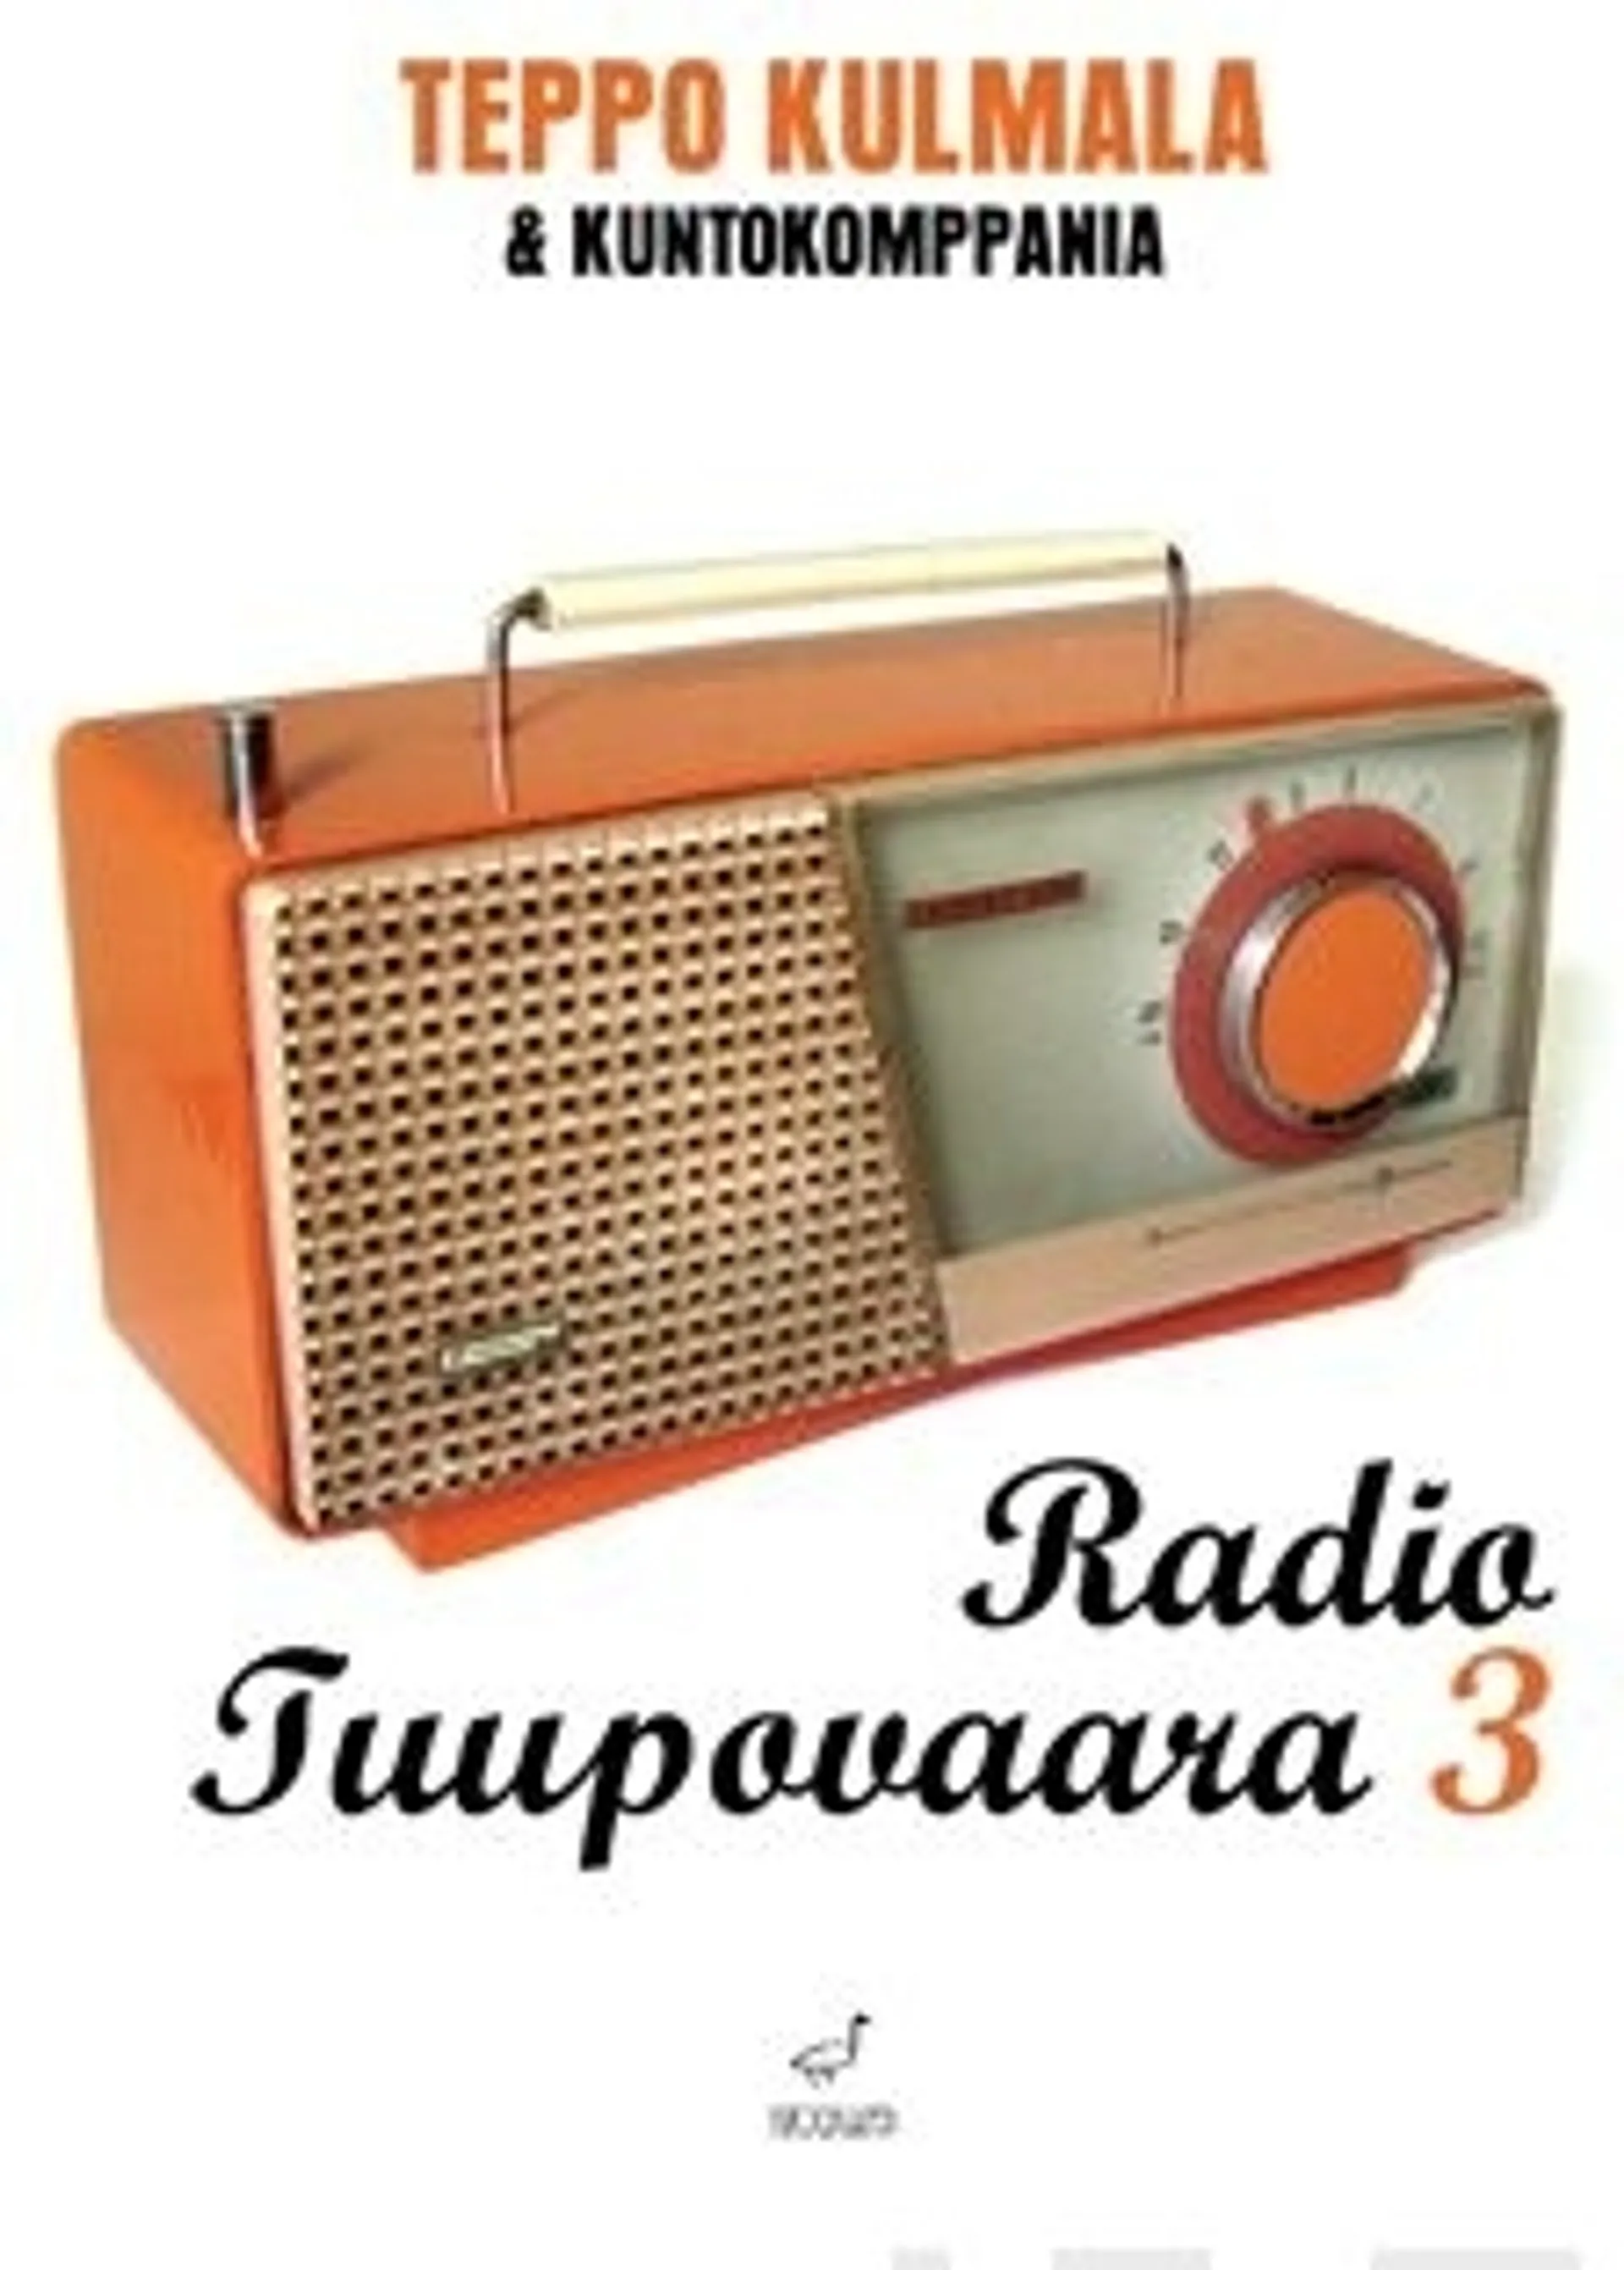 Kulmala, Radio Tuupovaara 3